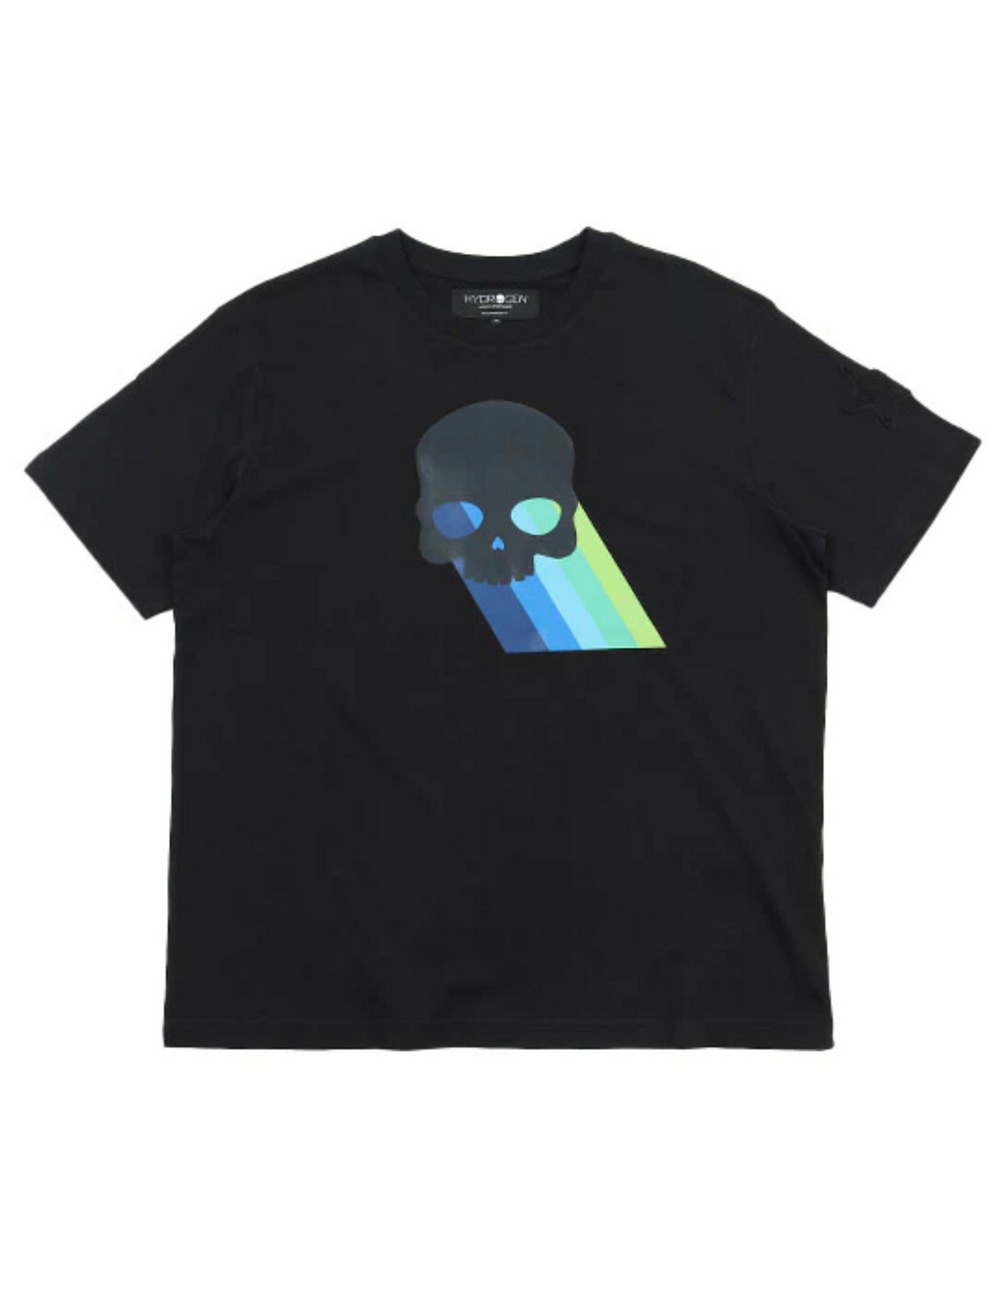 レインボースカルTシャツ(半袖) / RAINBOW SKULL T SHIRT 詳細画像 ブラック 1